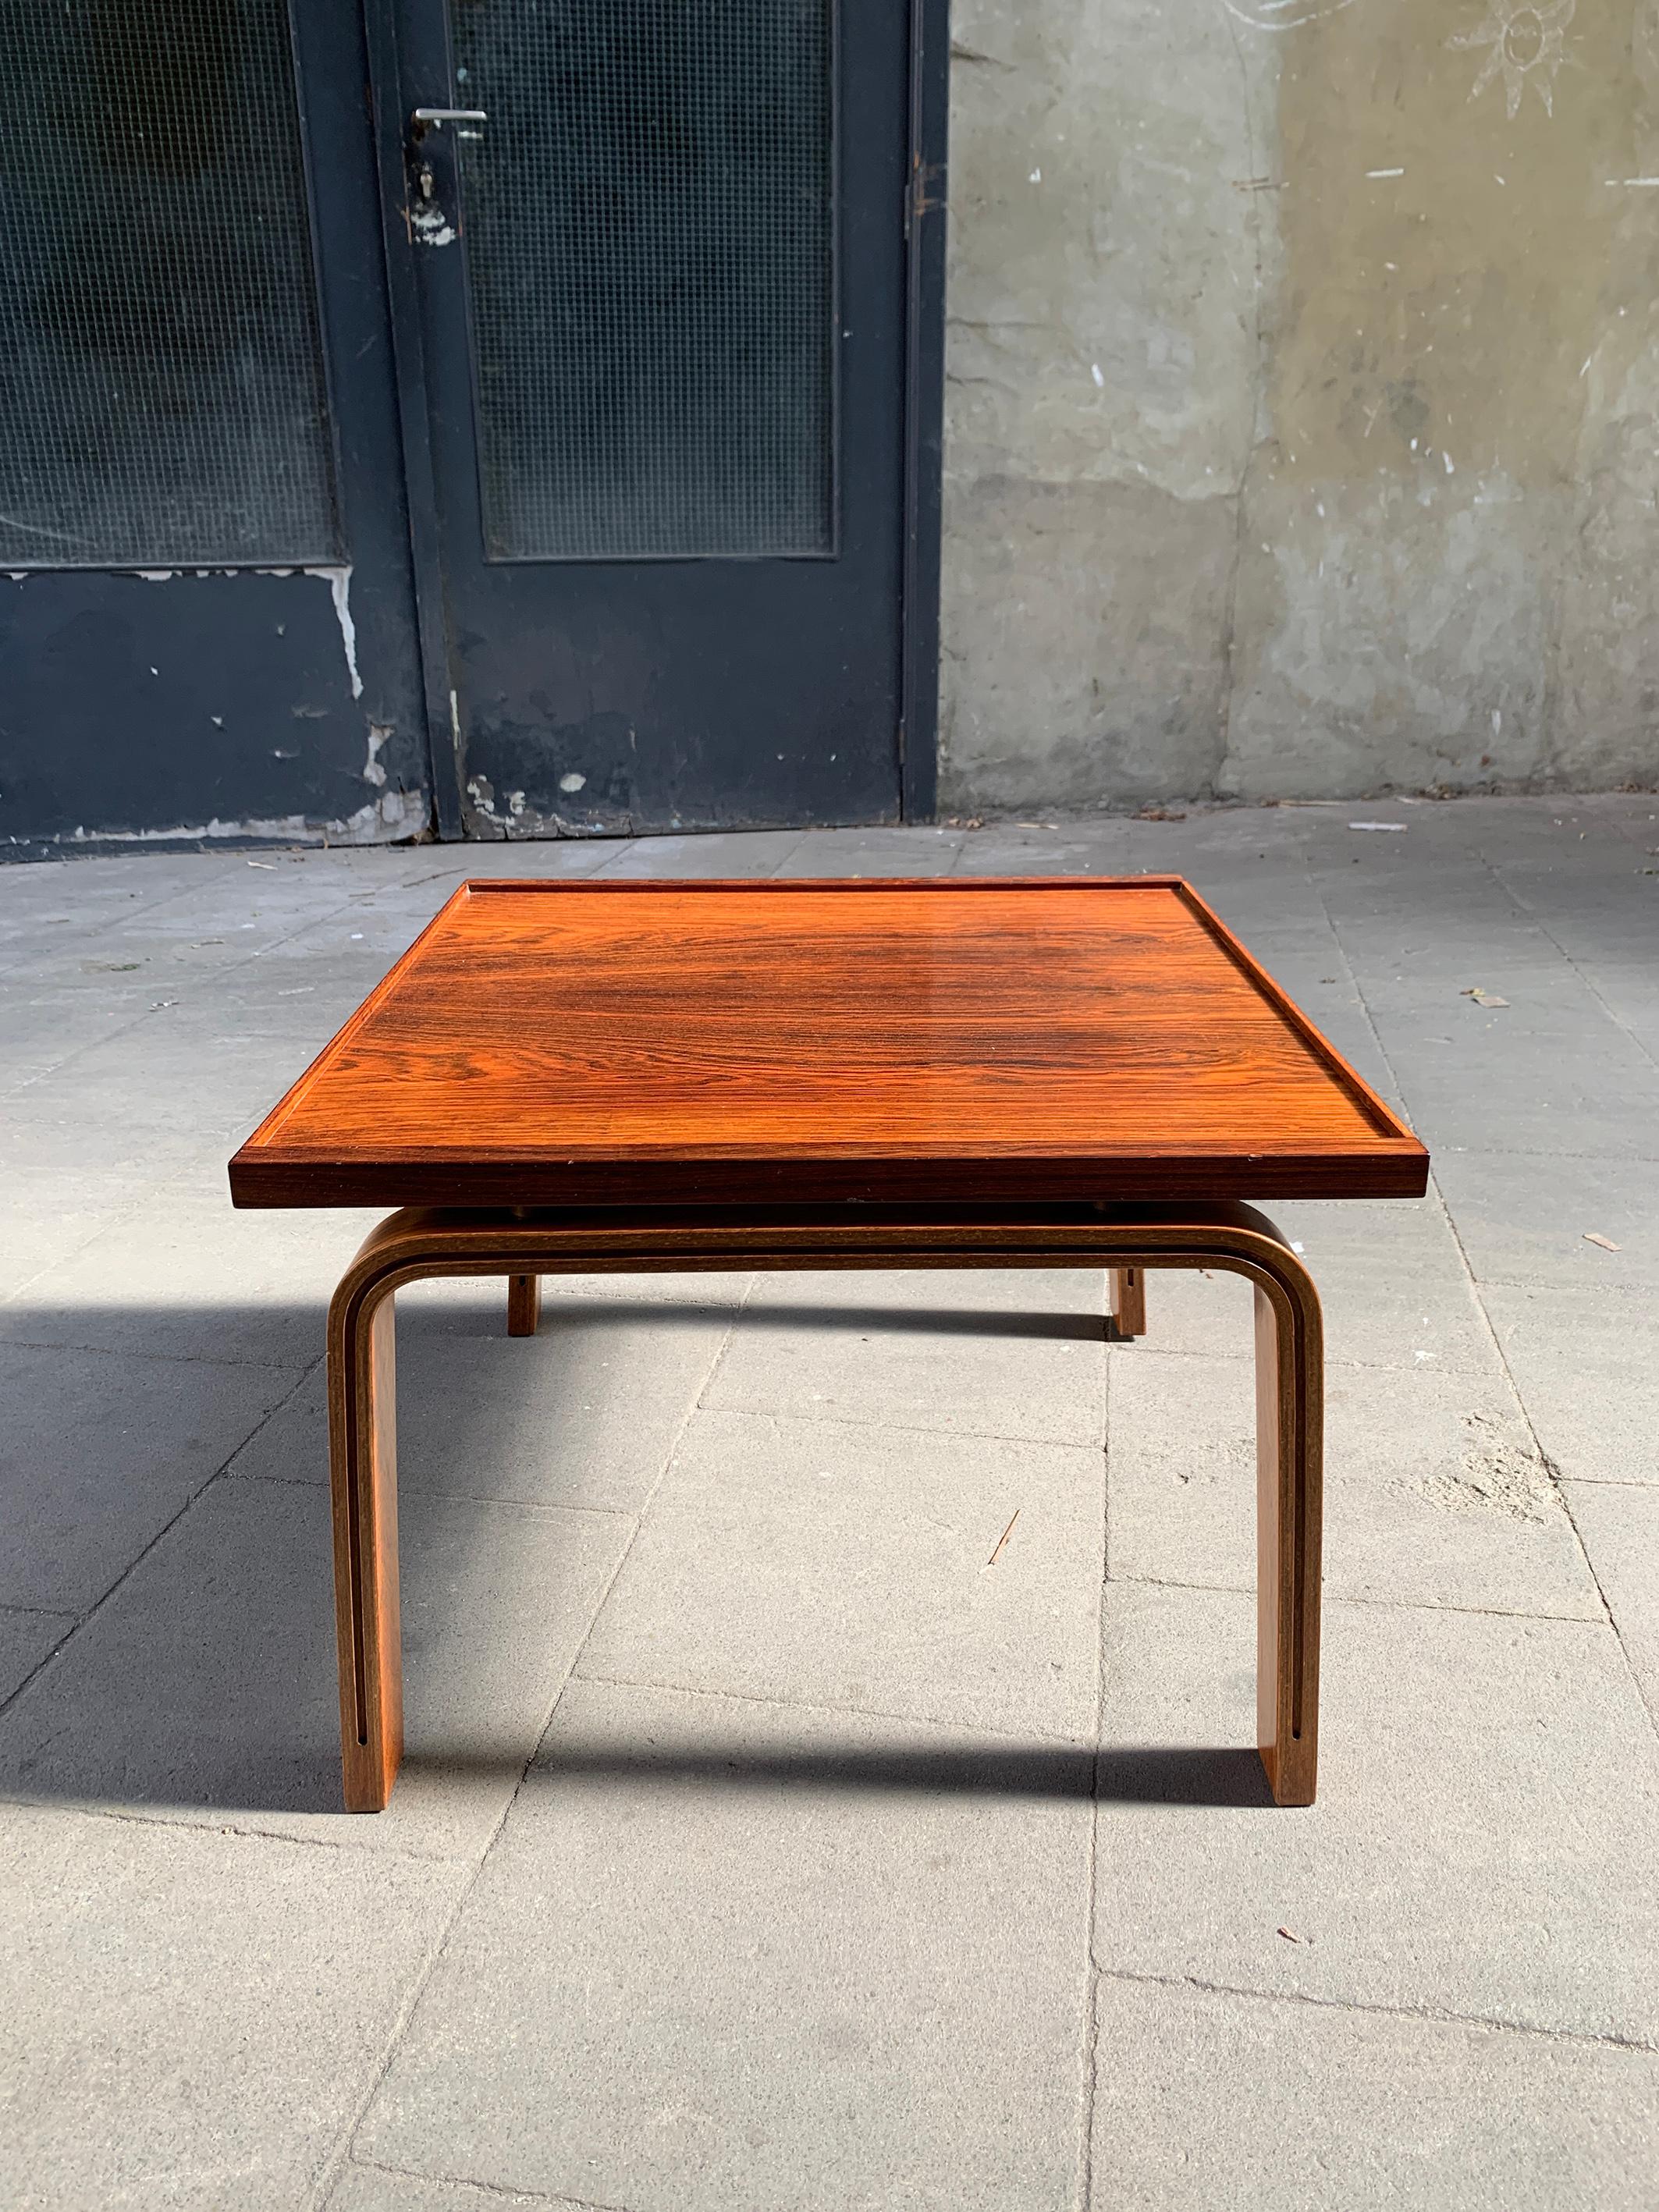 Rare table basse danoise en bois de rose dessinée par Arne Jacobsen. Très bel état d'origine.

Arne Jacobsen a créé l'extension du St. Catherines College d'Oxford de 1959 à 1964. Outre les célèbres chaises de la série Oxford, il a également conçu